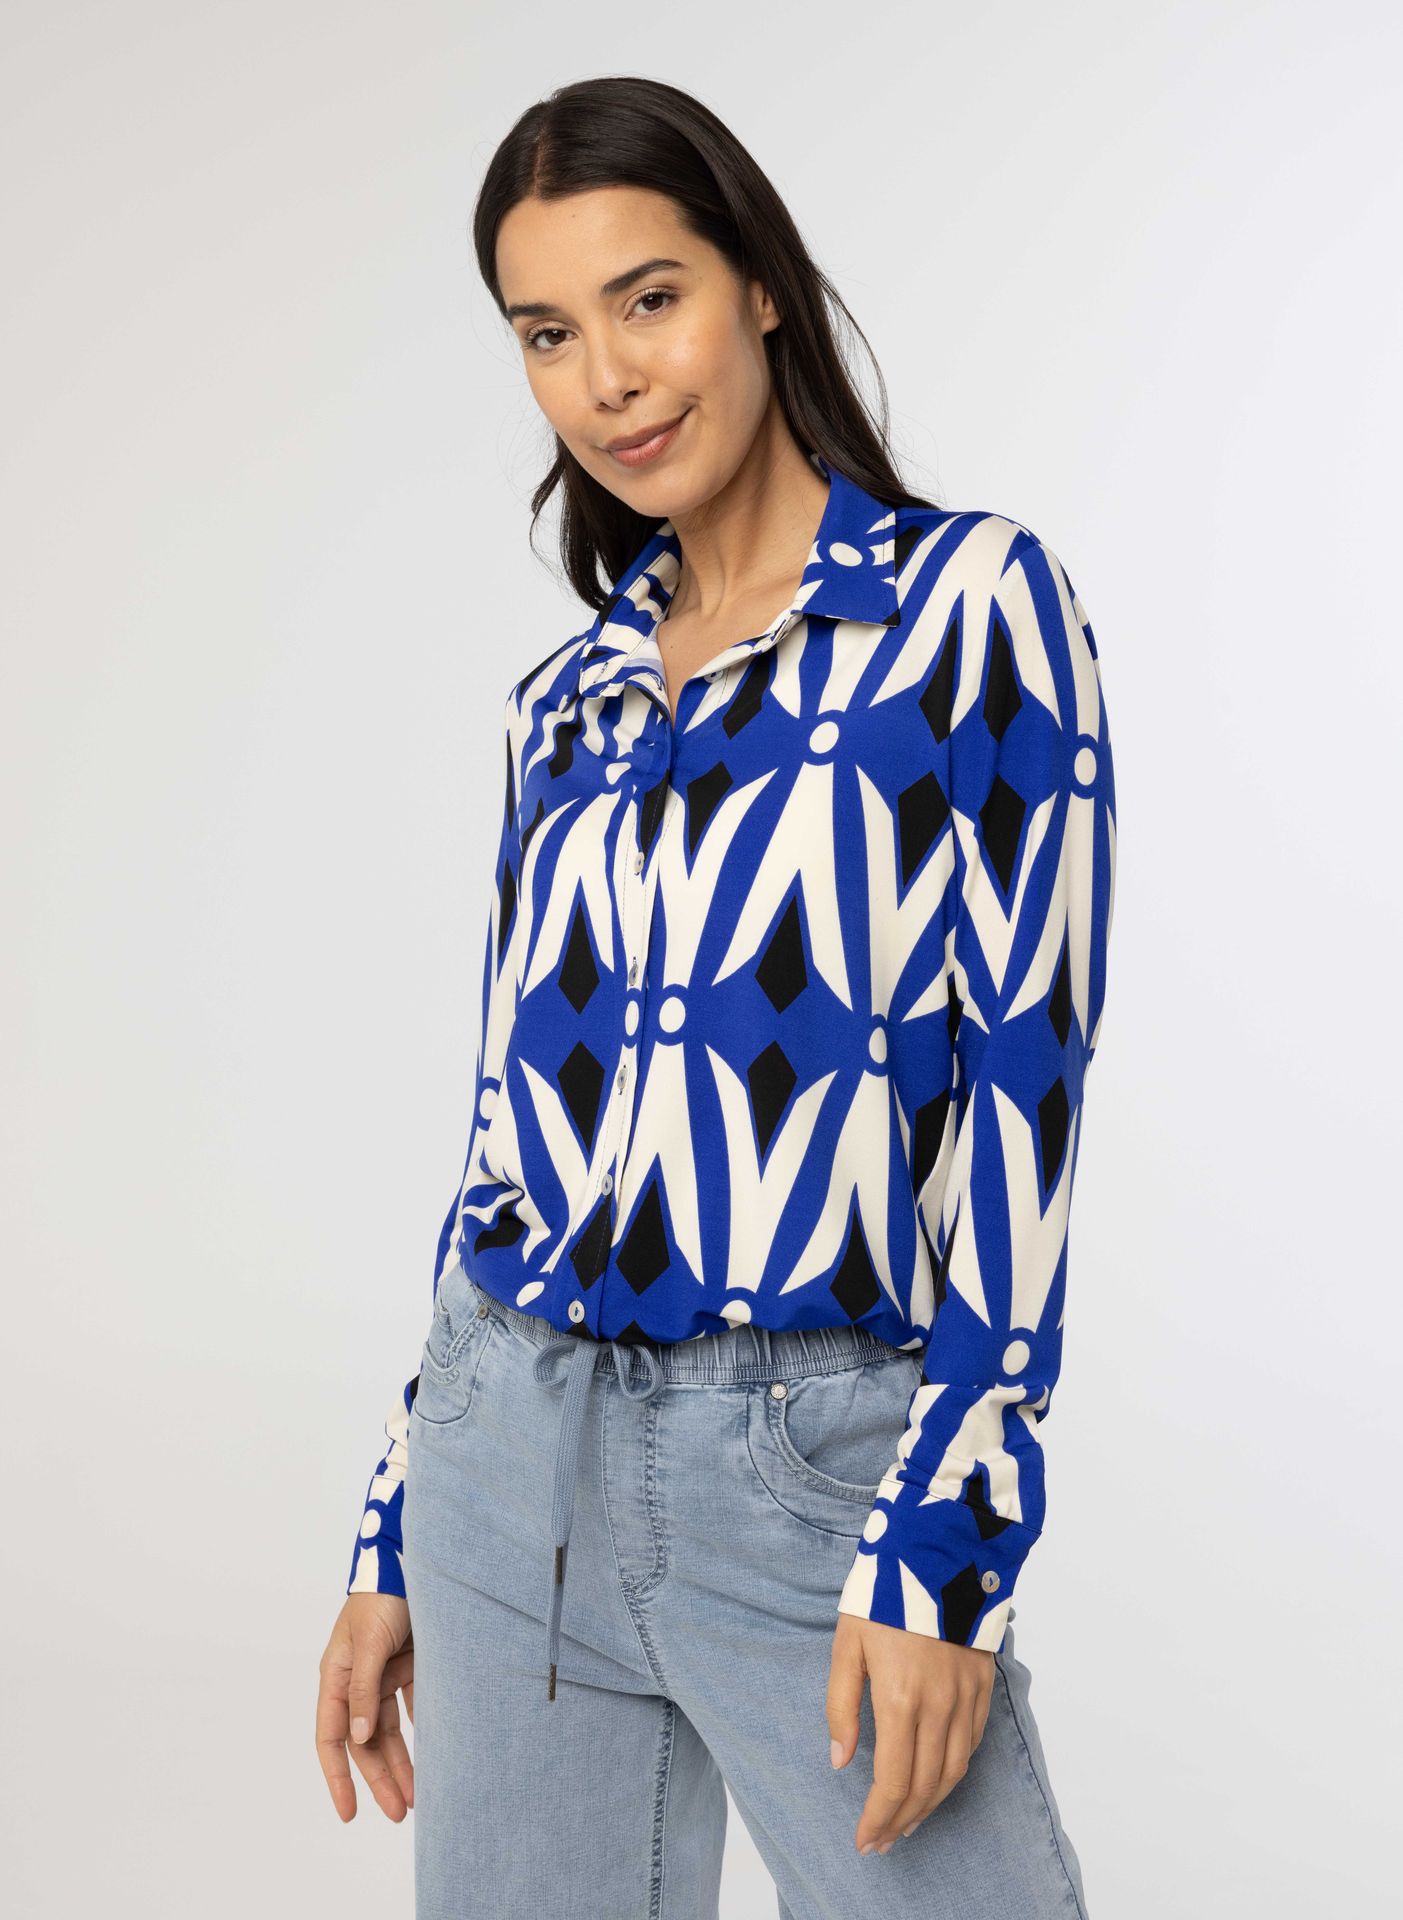 Norah Kobaltblauwe blouse met print blue multicolor 213898-420